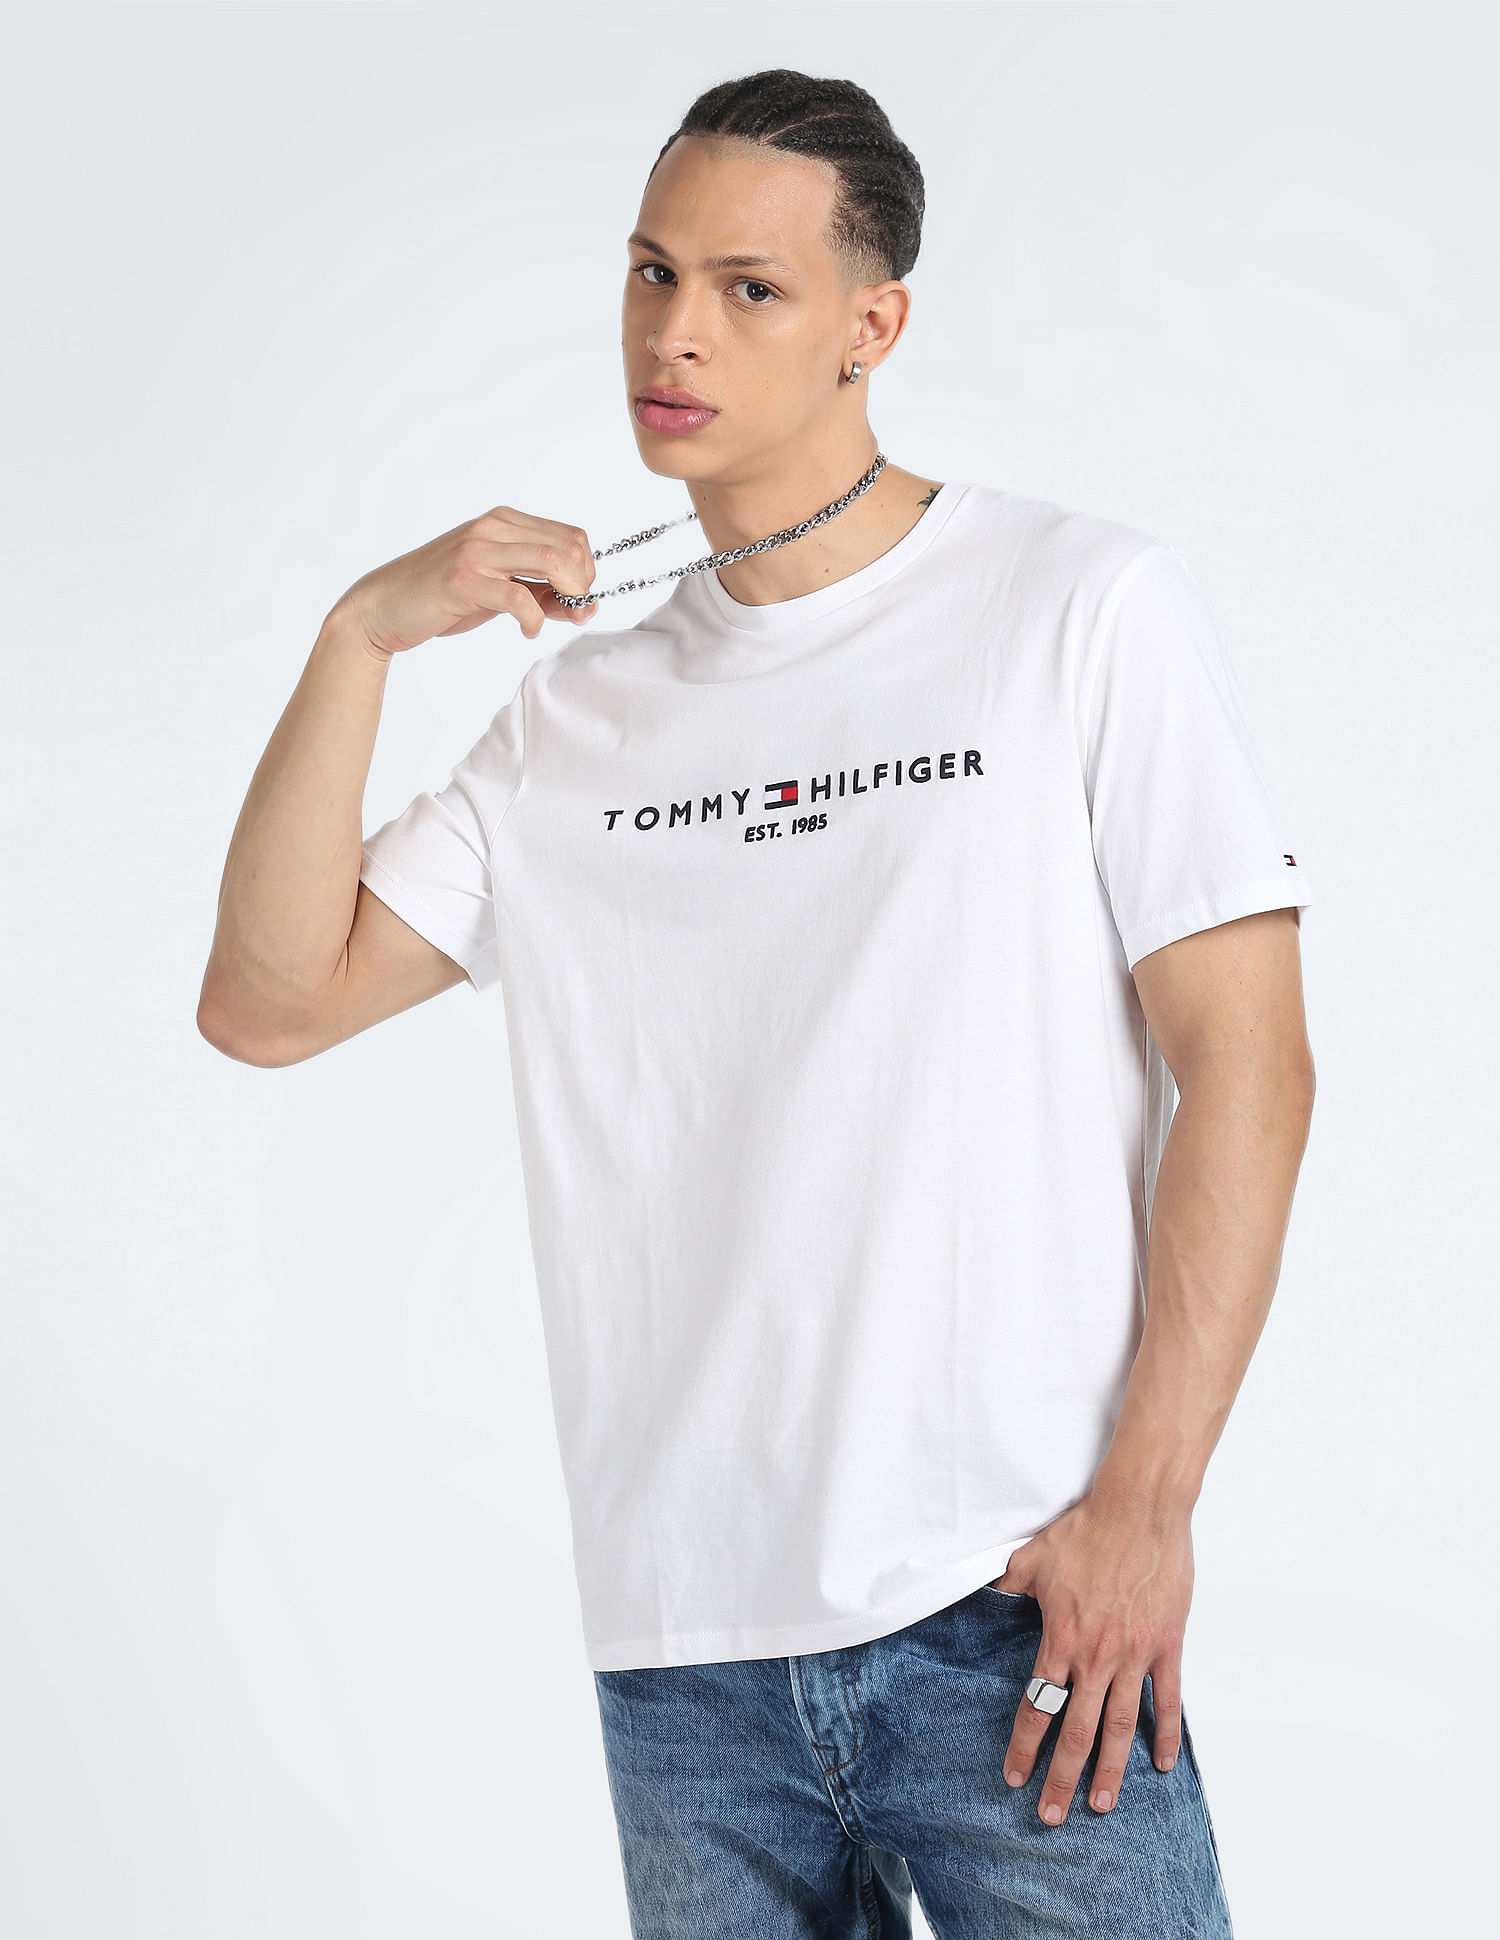 Dempsey Afskrække tåbelig Buy Tommy Hilfiger Embroidered Logo Regular Fit T-Shirt - NNNOW.com